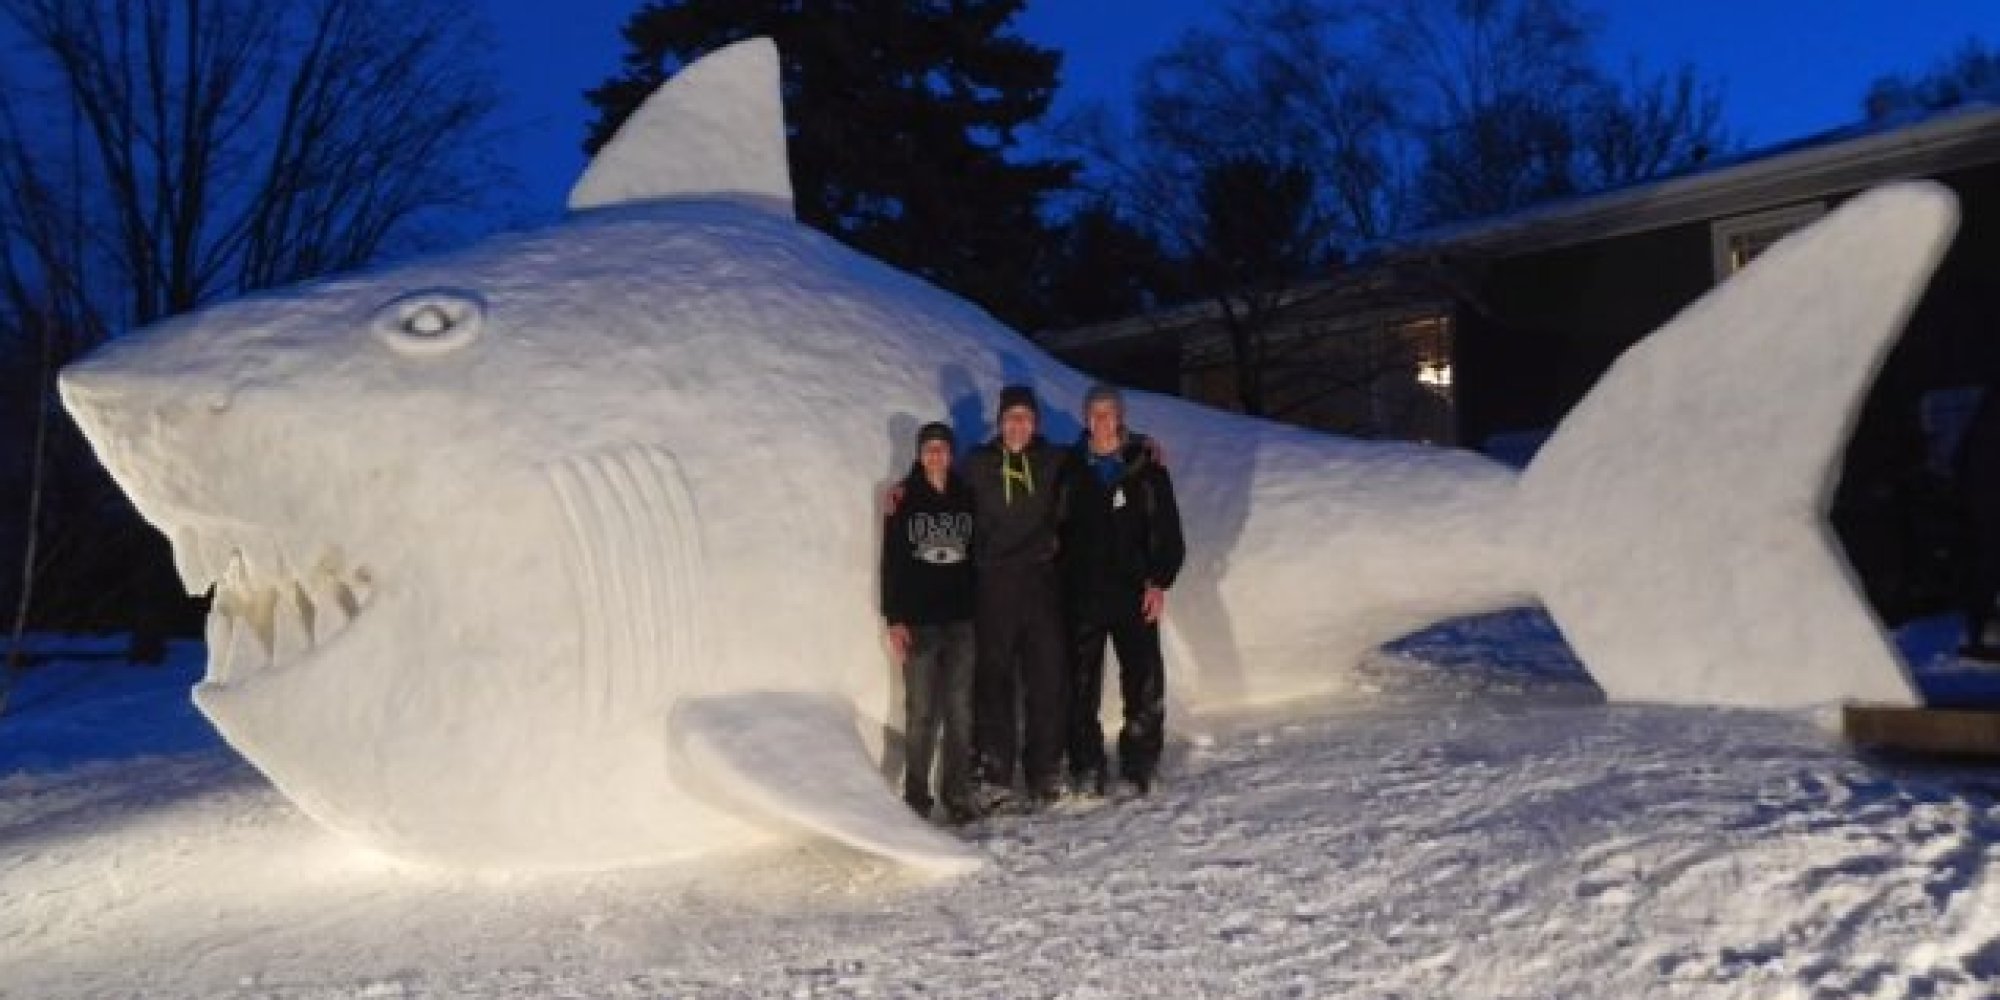 27 Spectacular Snow Sculptures